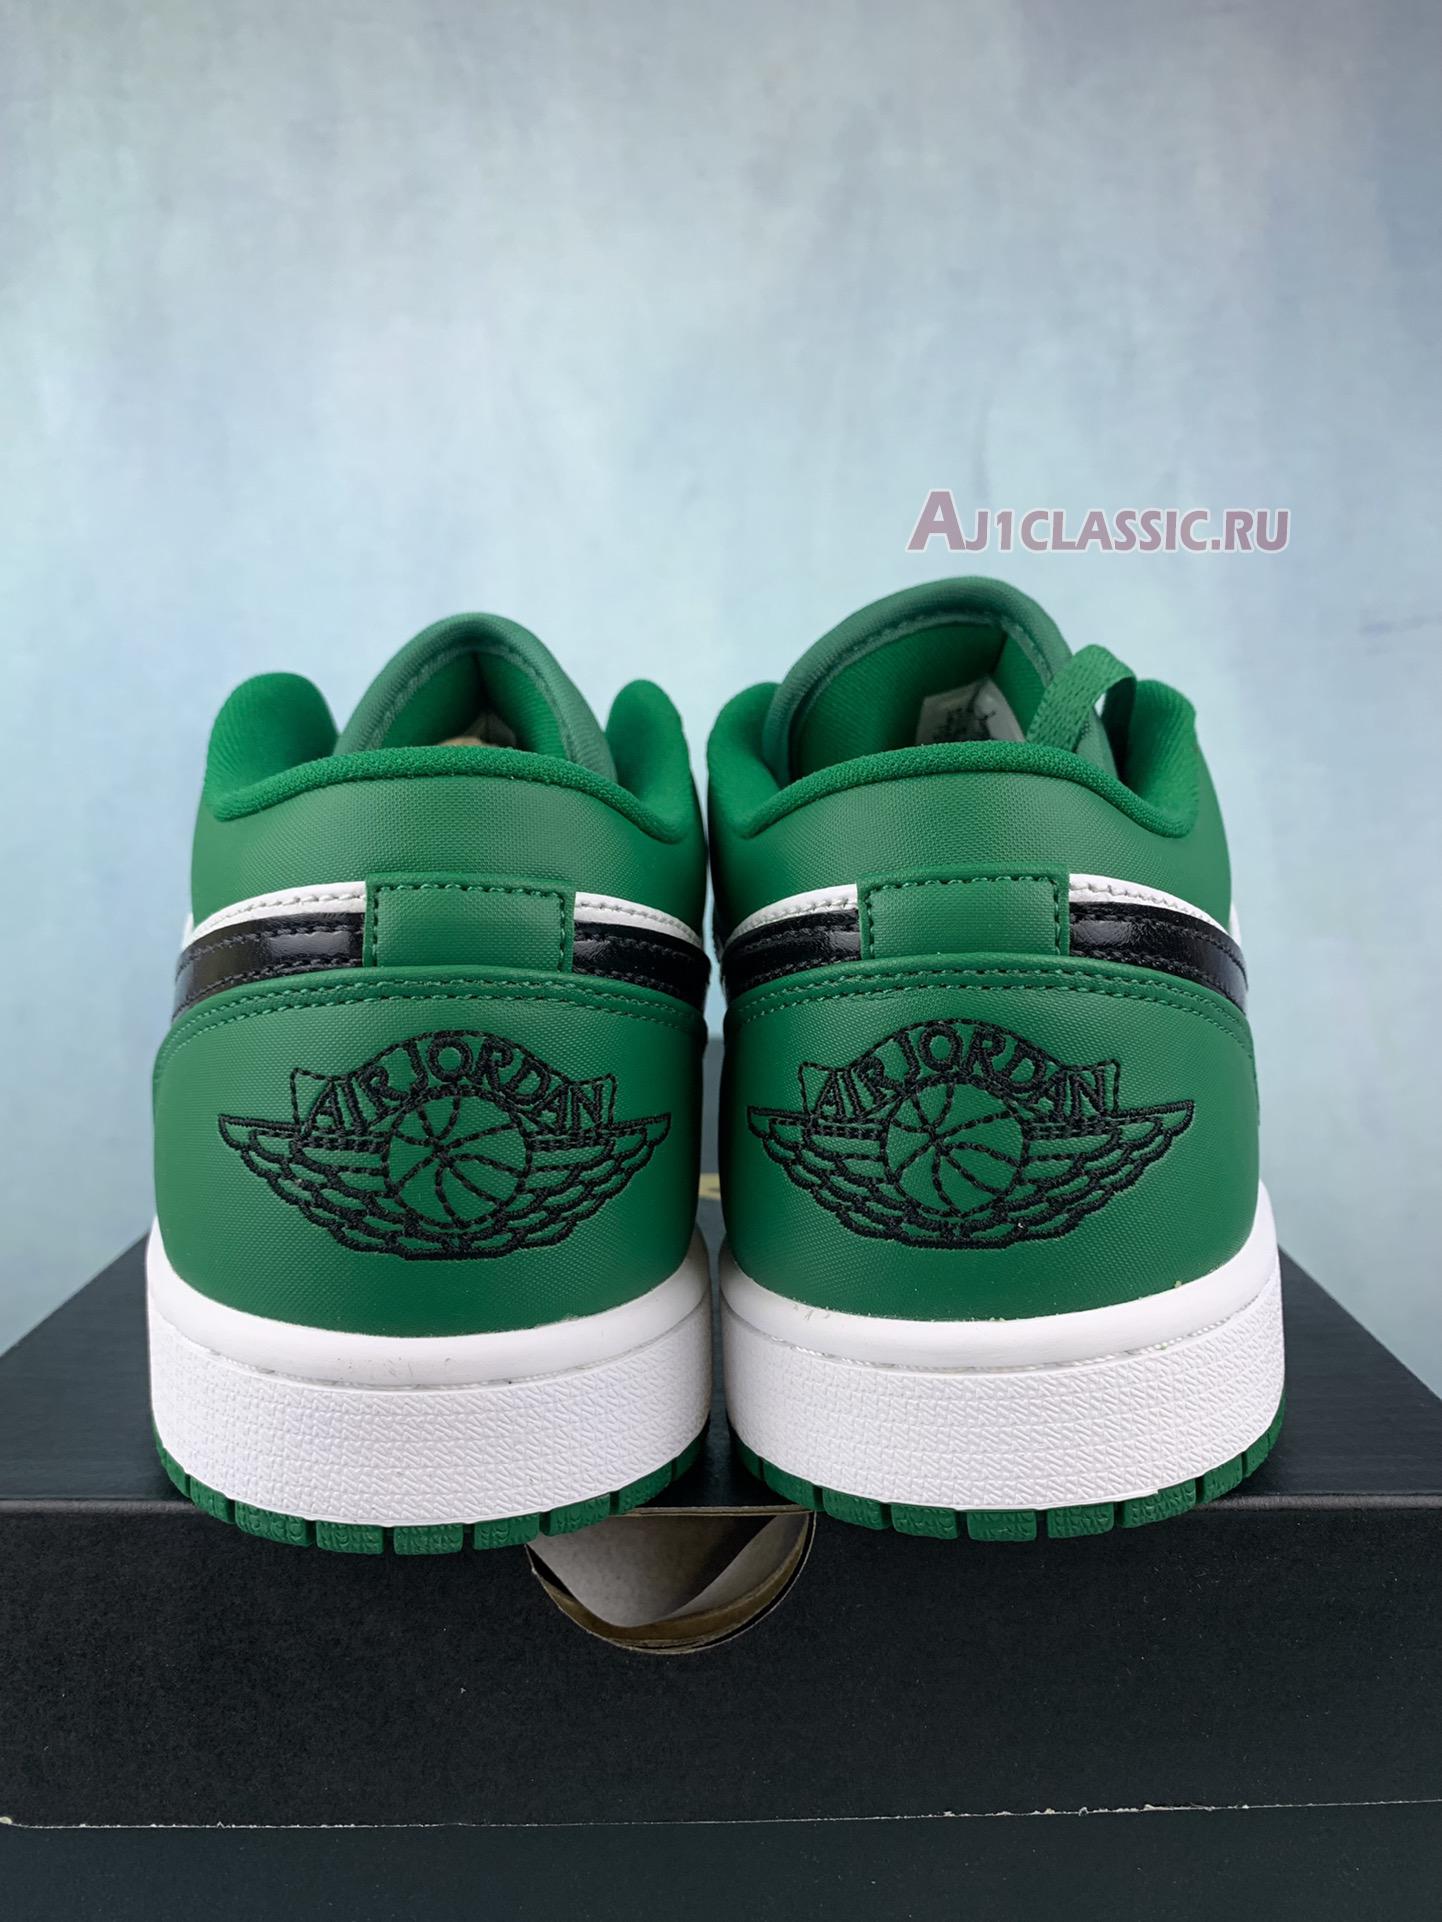 Air Jordan 1 Low "Pine Green" 553558-301-2